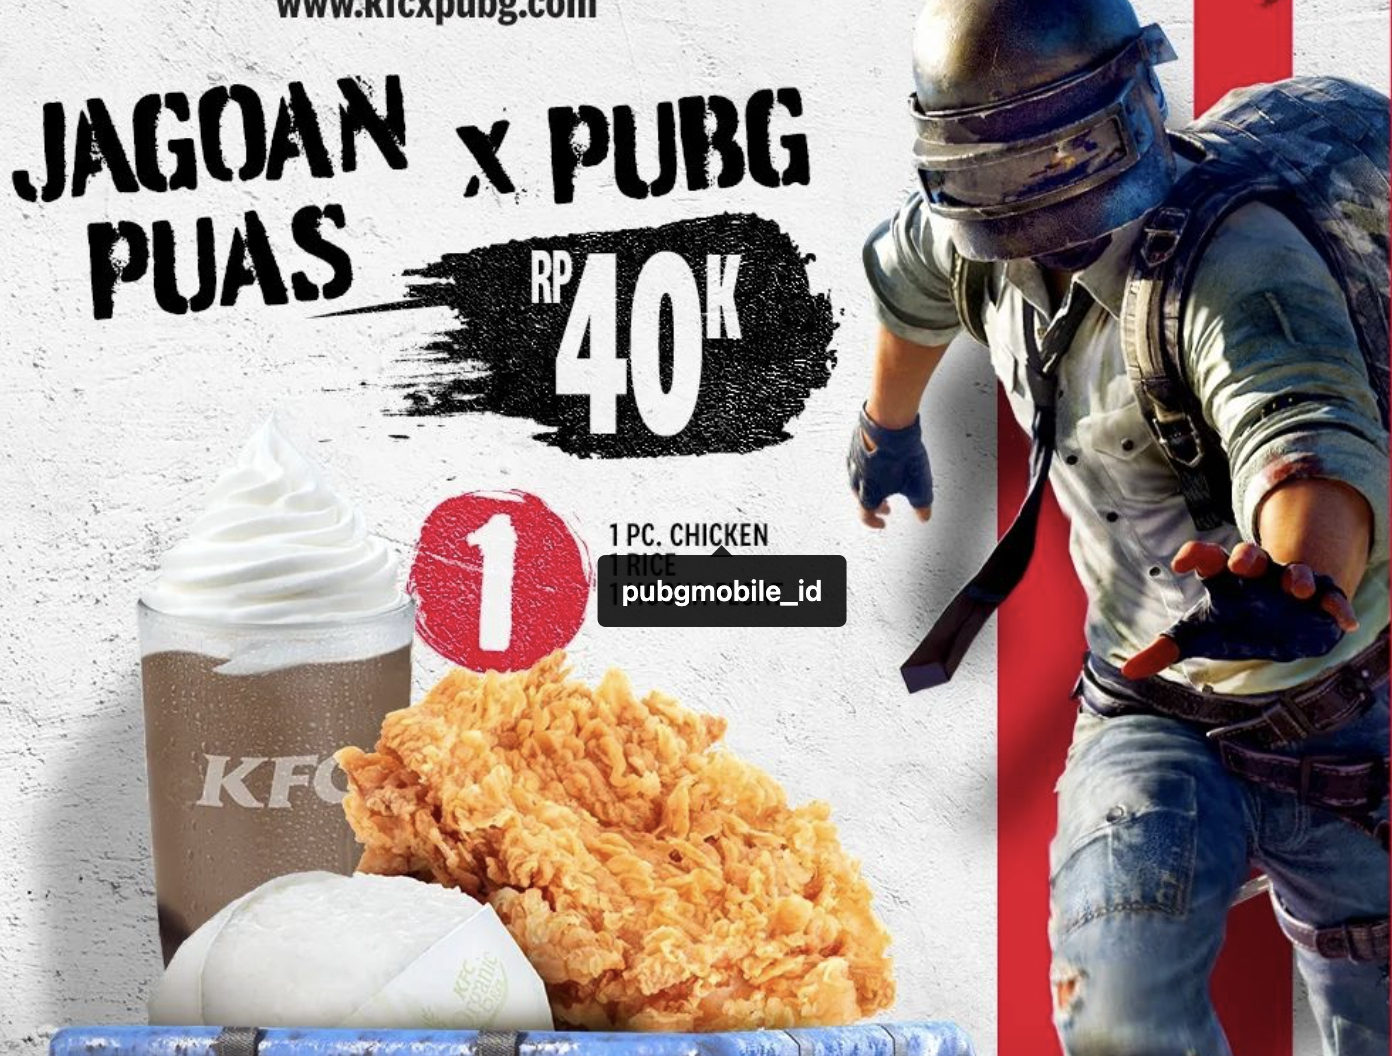 Promo "KFC x PUBG Mobile" Paket Jagoan Puas 1 KFC x PUBG Mobile Foto: Official KFC/Instagram